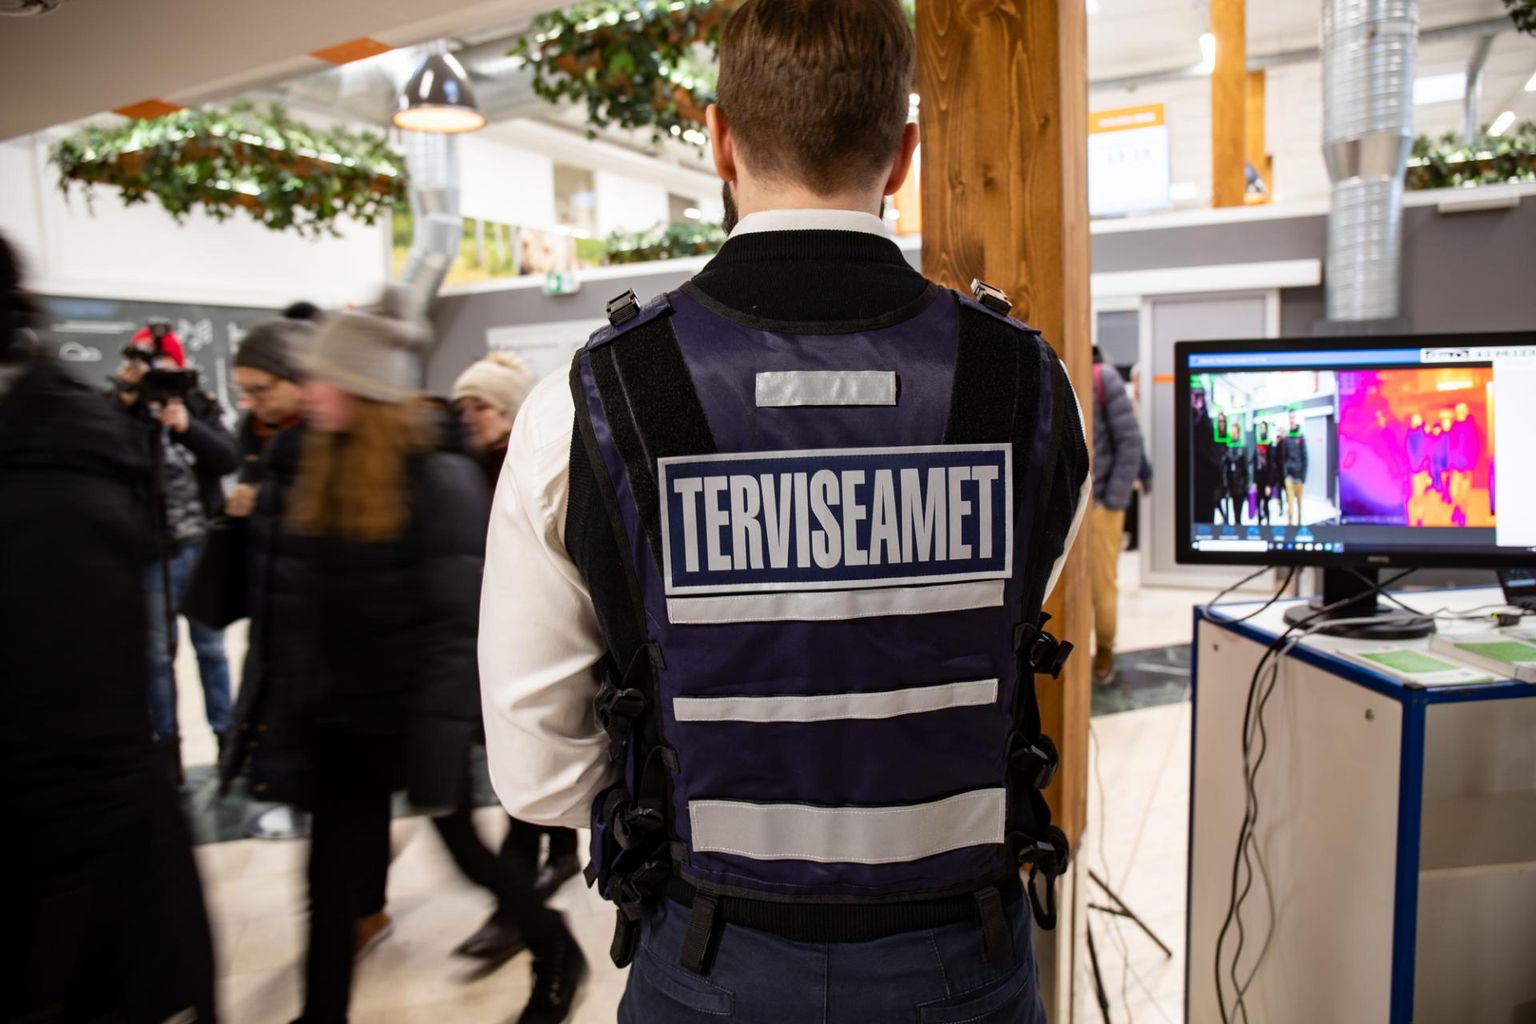 Eile tutvustati Tallinna sadama A-terminalis uut termokaamerat, mis mõõdab saabuvate reisijate kehatemperatuuri. Samasugune kaamera pannakse üles ka Tallinna lennujaama.